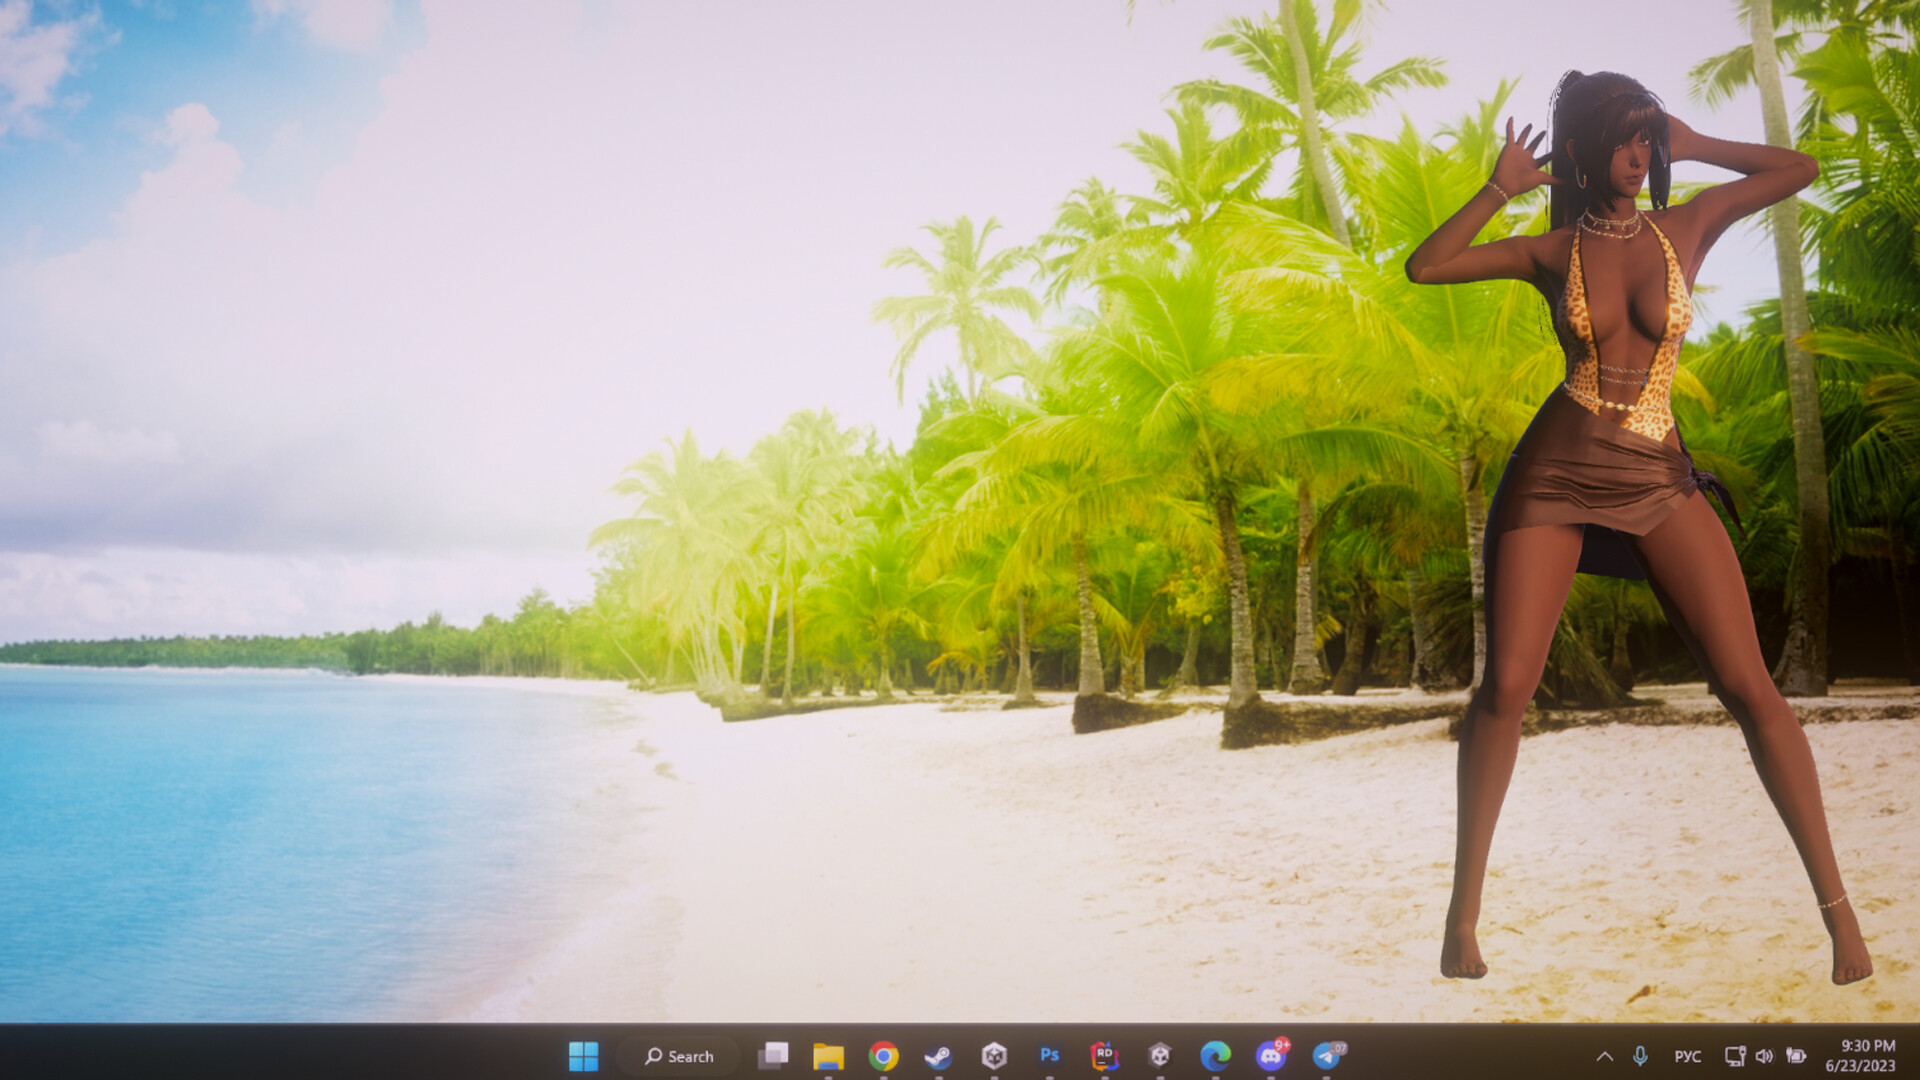 Desktop Beach Girls - 18+ DLC Steam CD Key